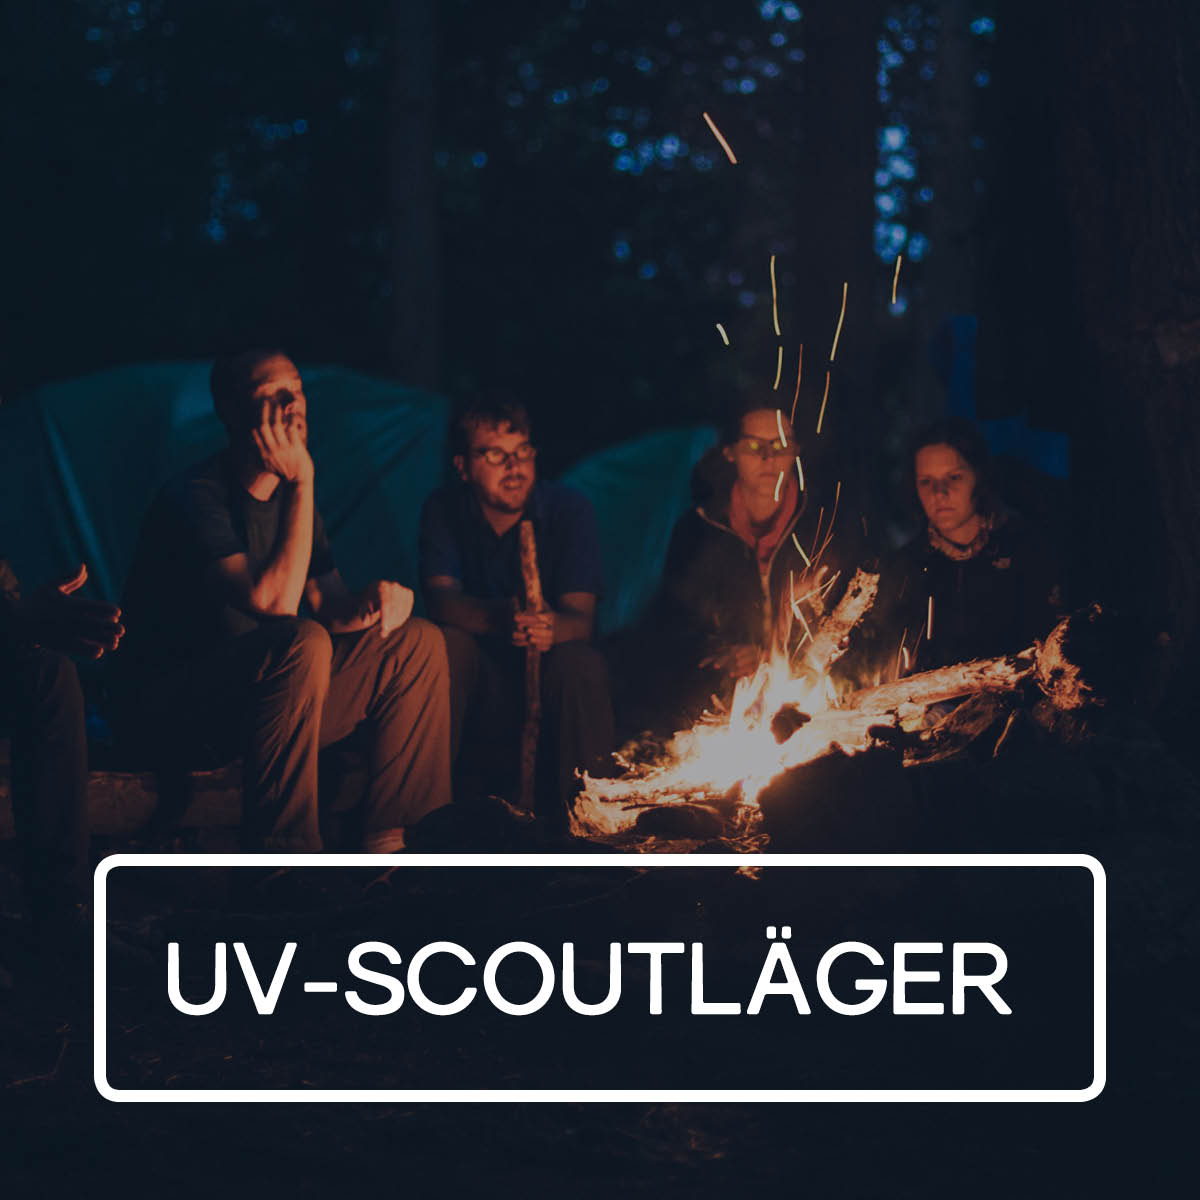 UV-Scout, Forserum,Centrumkyrkan, Centrumförsamlingen, läger, aktiviteter, sommar, scouting